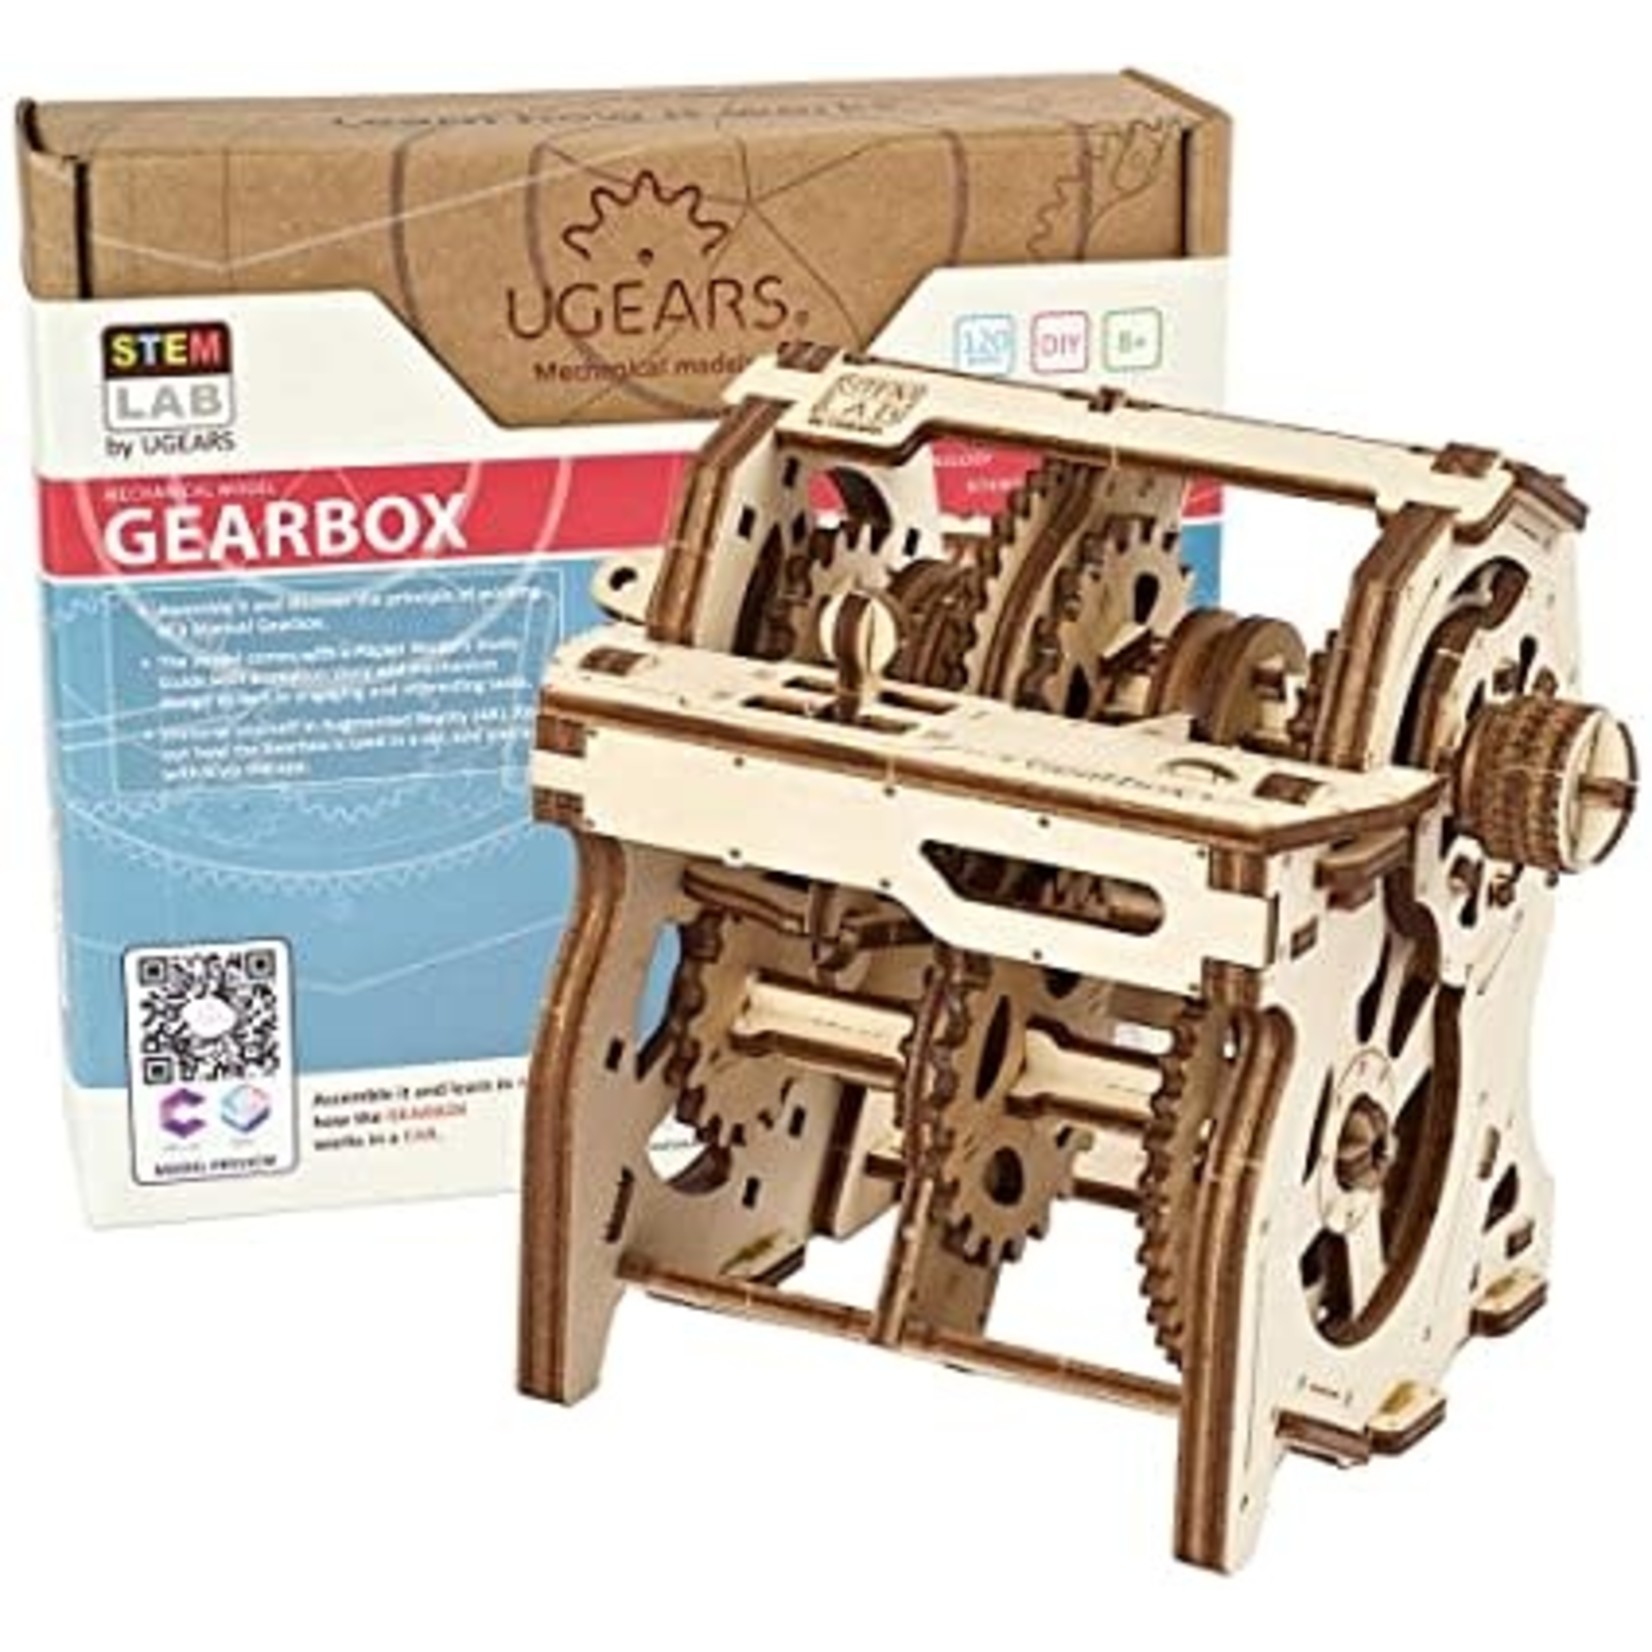 UGEARS UGR70131 STEM LAB Gearbox